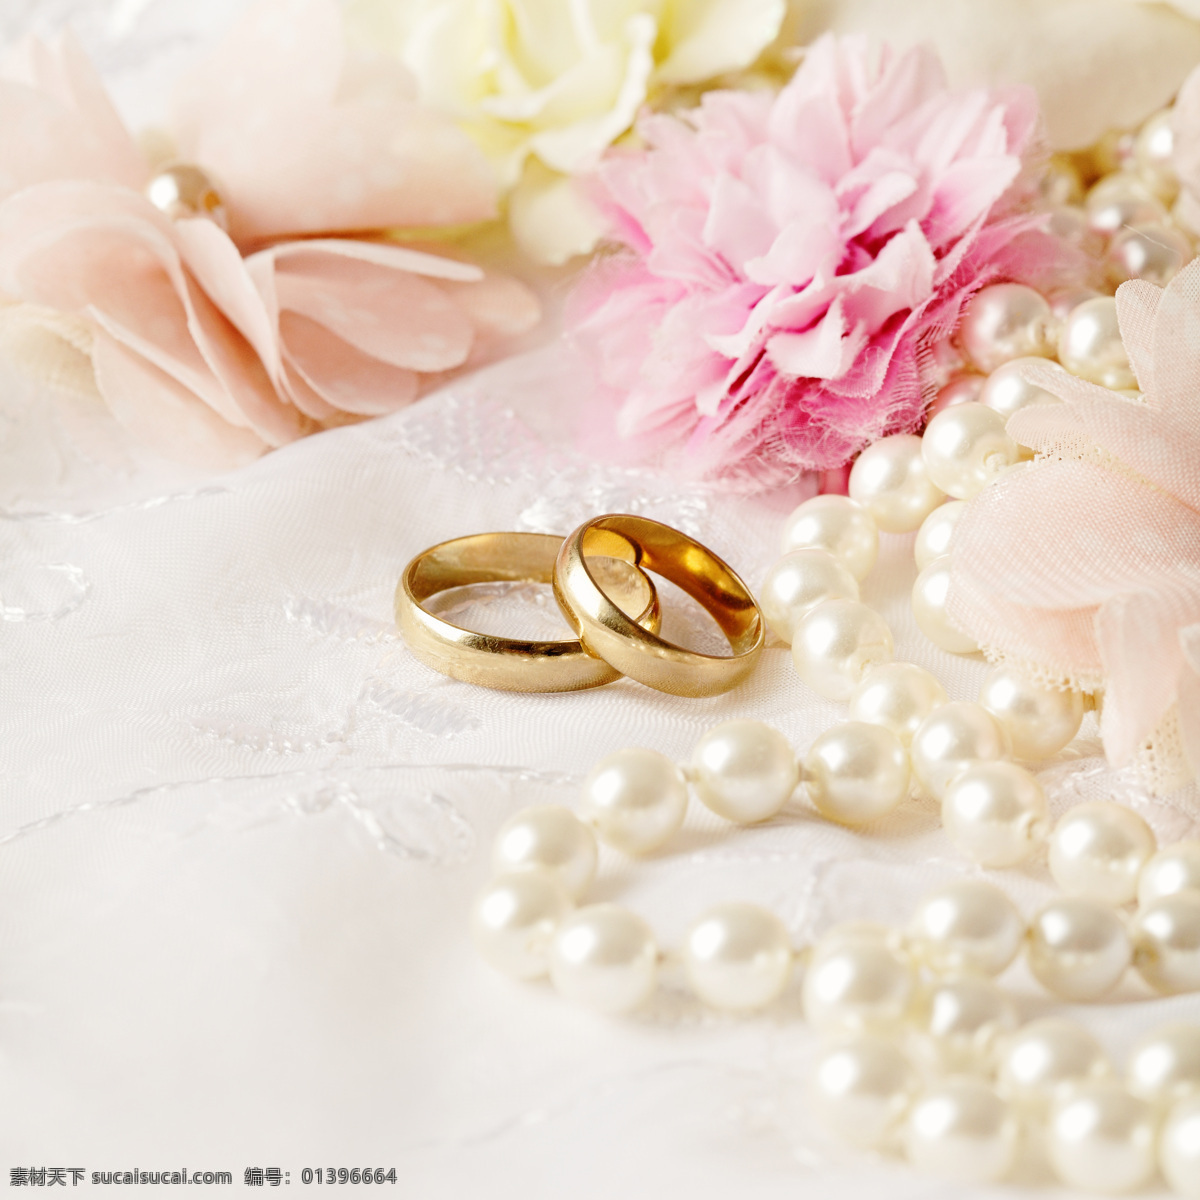 金戒 指 珍珠 项链 戒指 钻指 钻石 珠宝首饰 宝石 饰品 金银首饰 珠宝服饰 婚礼图片 生活百科